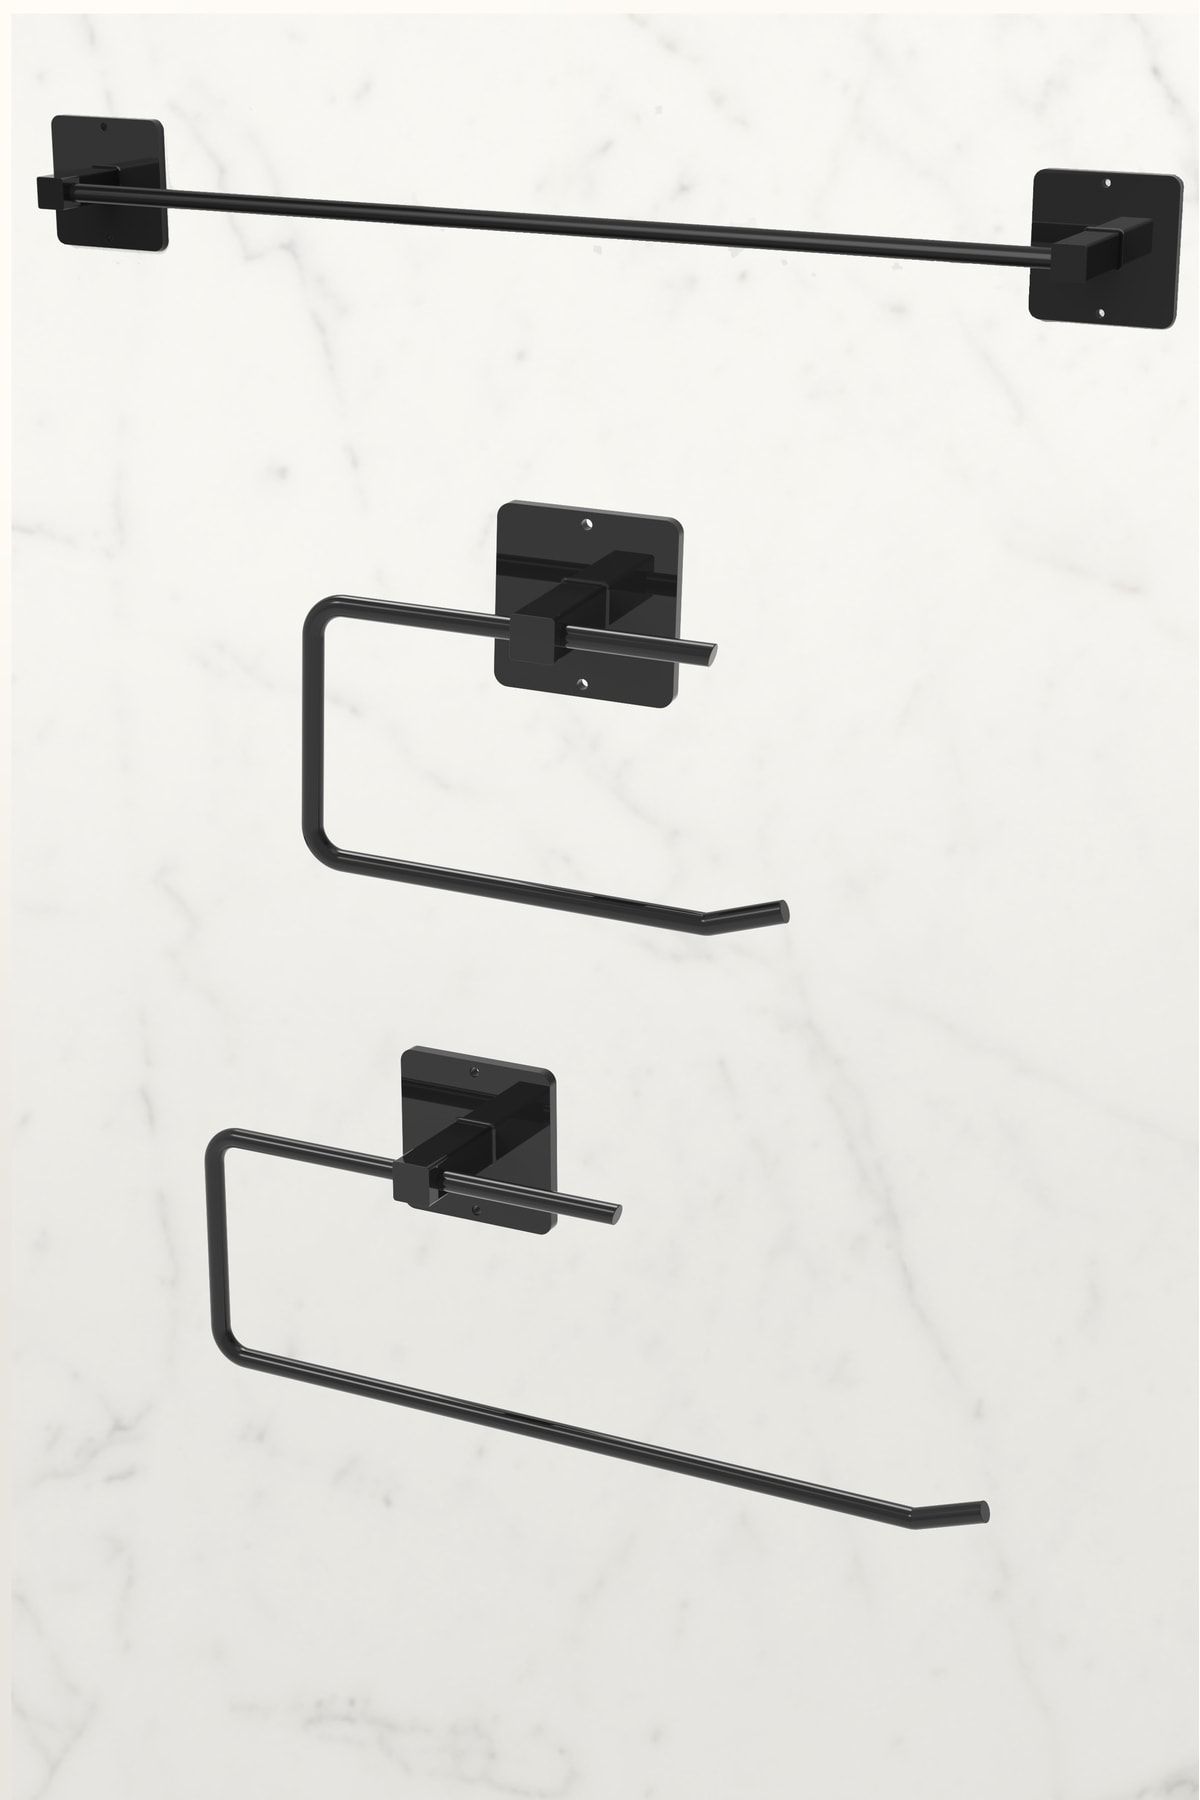 KARTEYA Yapışkanlı Siyah Uzun Havluluk Rulo Havluluk Peçetelik Wc Kağıtlık 3'lü Pratik Banyo Mutfak Set